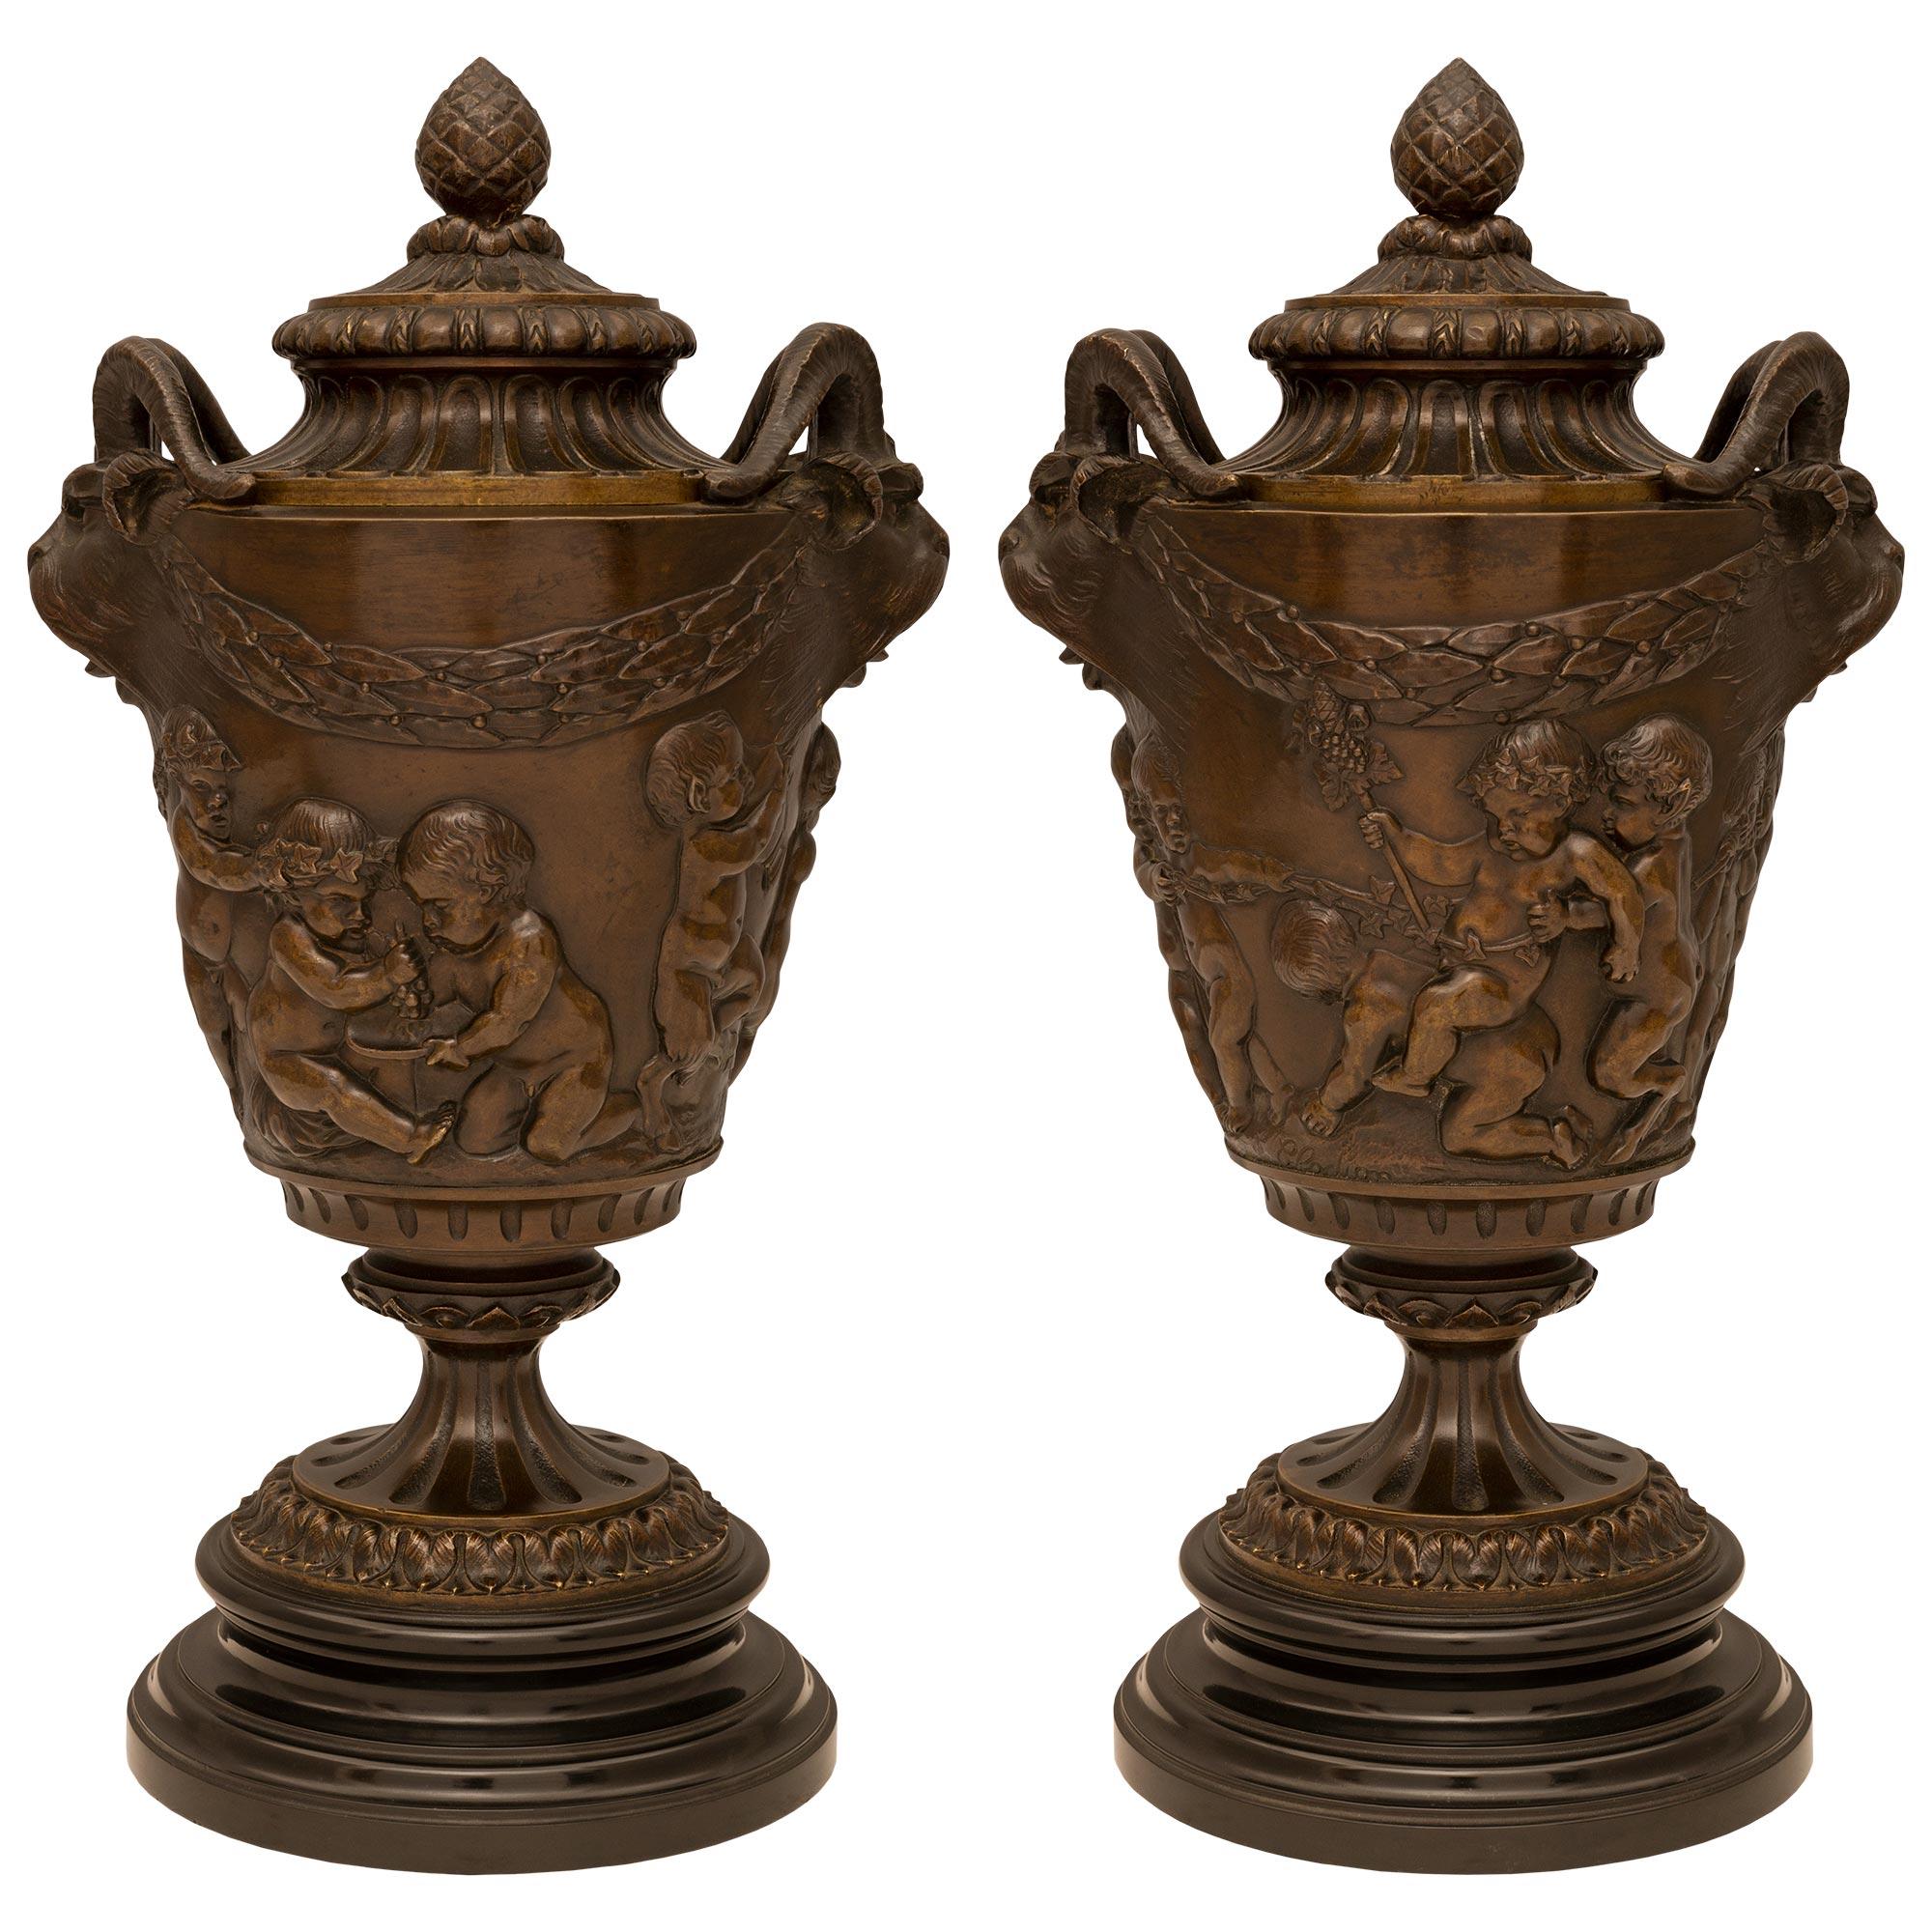 Paire d'urnes de style Louis XVI du 19ème siècle en bronze et marbre signées Clodion